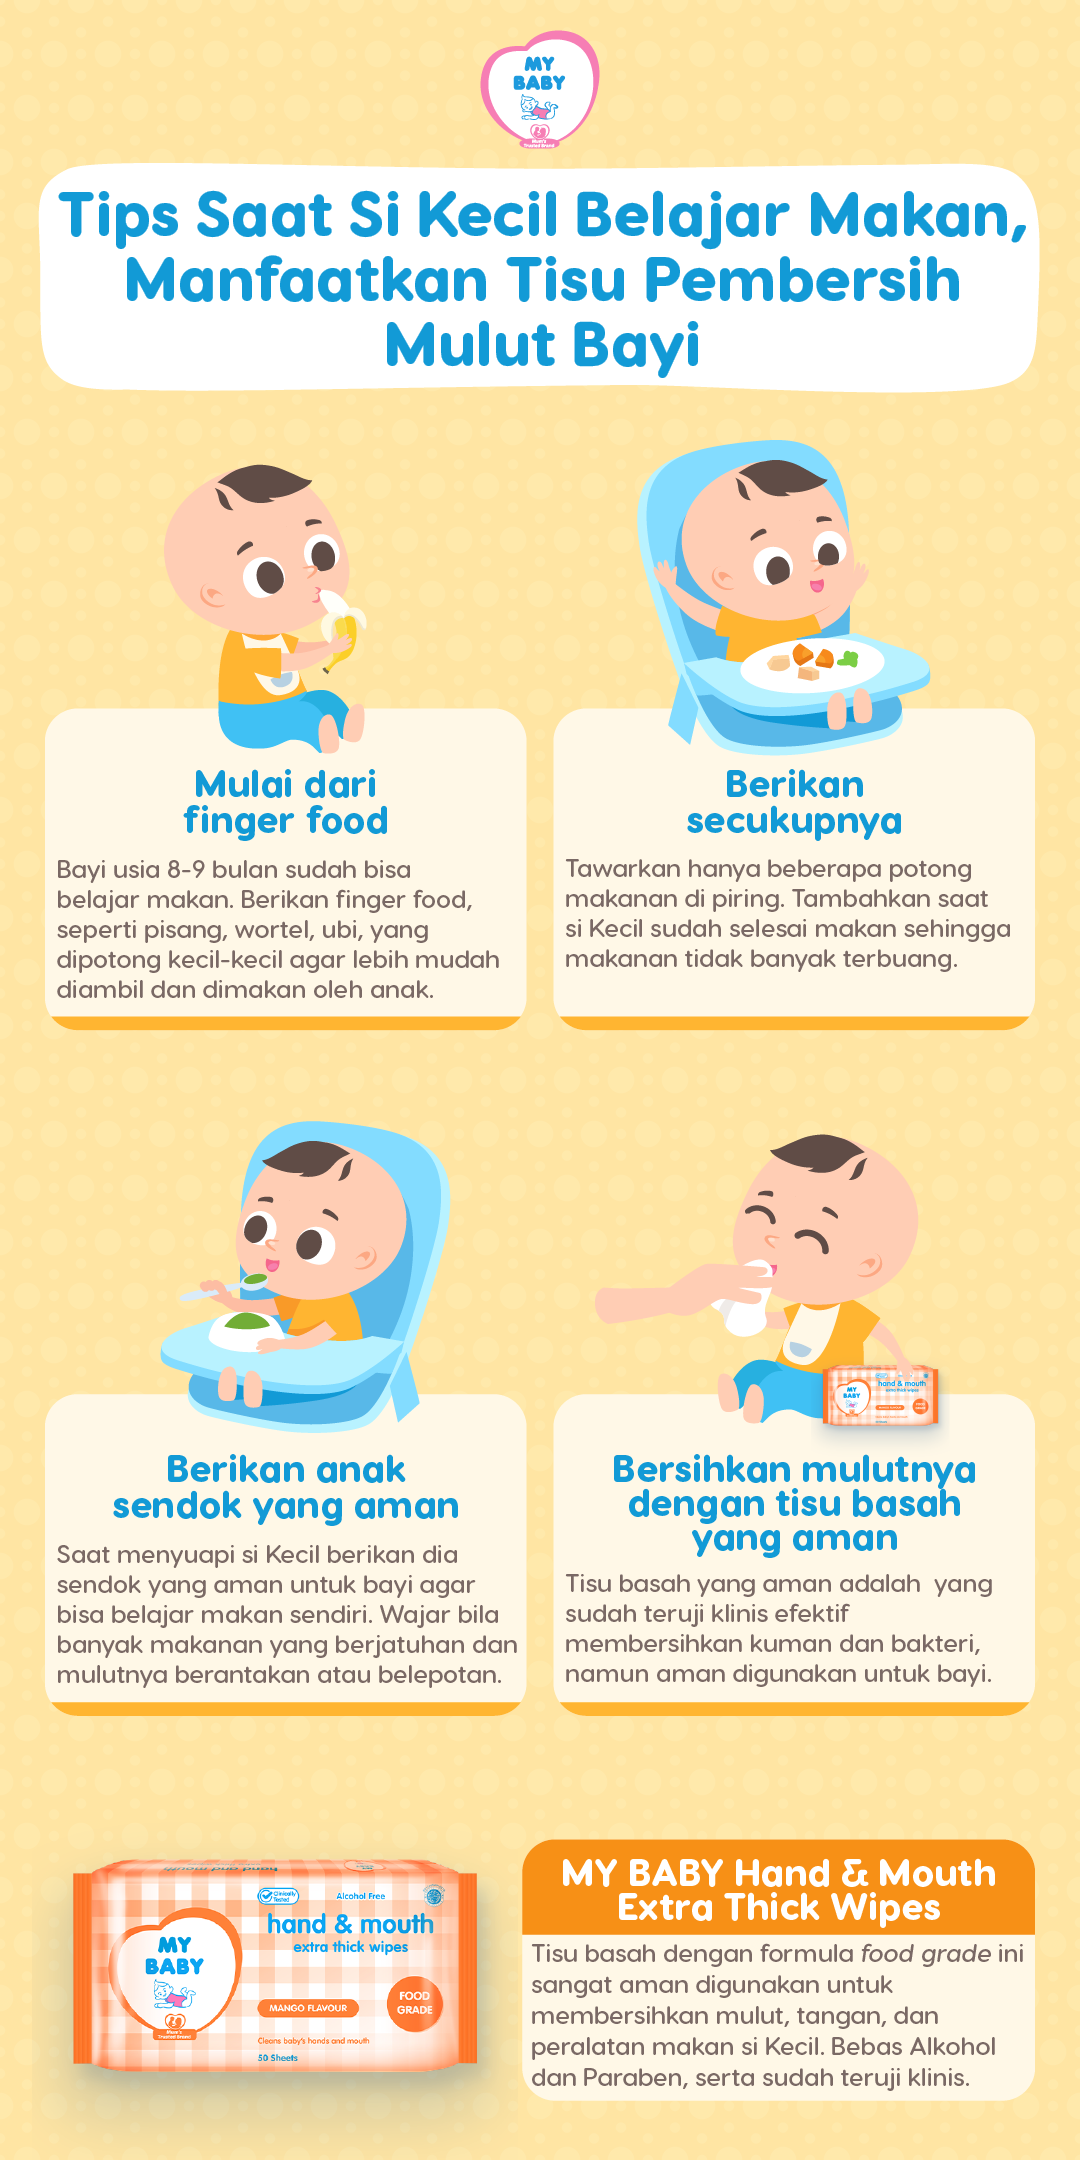 Tips Saat Si Kecil Belajar Makan, Manfaatkan Tisu Pembersih Mulut Bayi